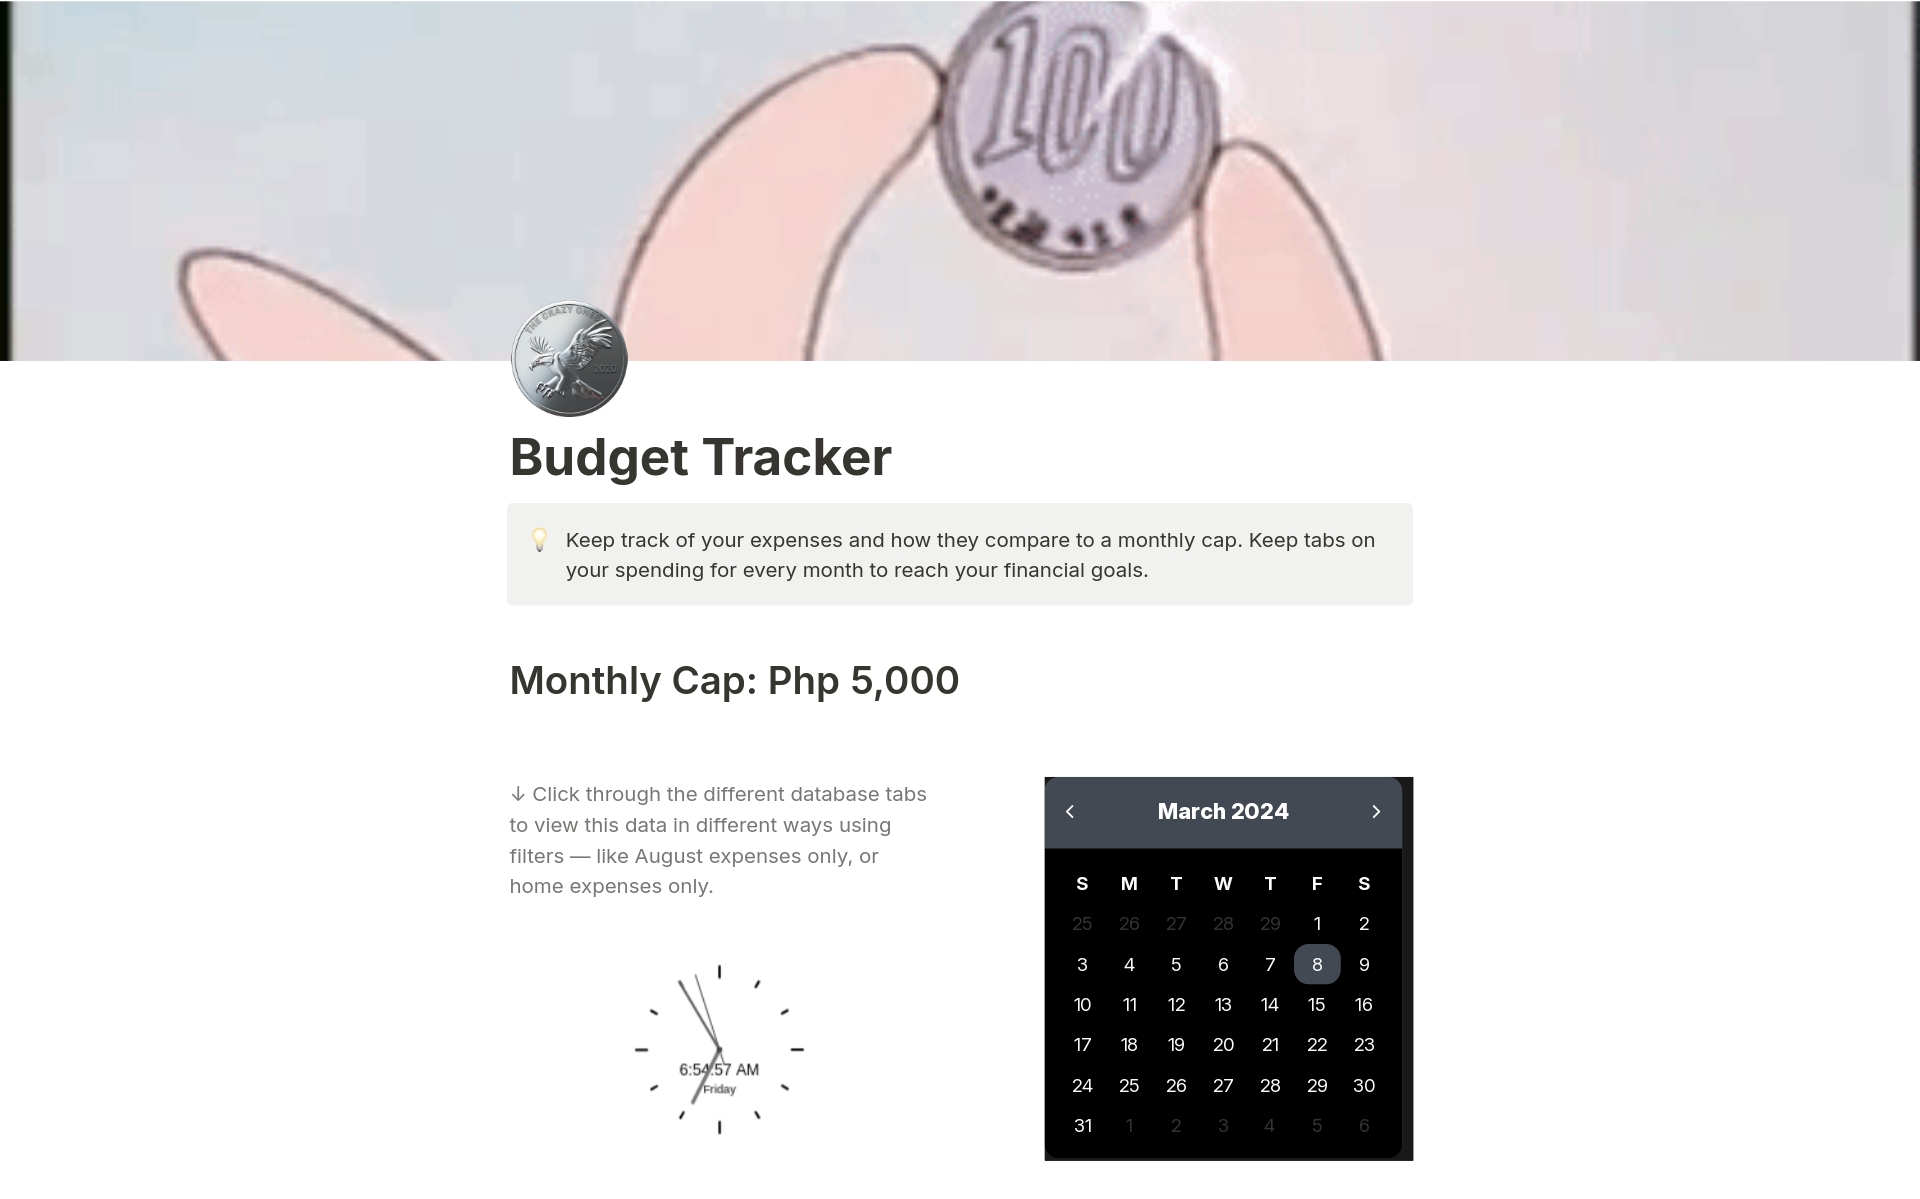 Uma prévia do modelo para Budget Tracker - Pinoy Version